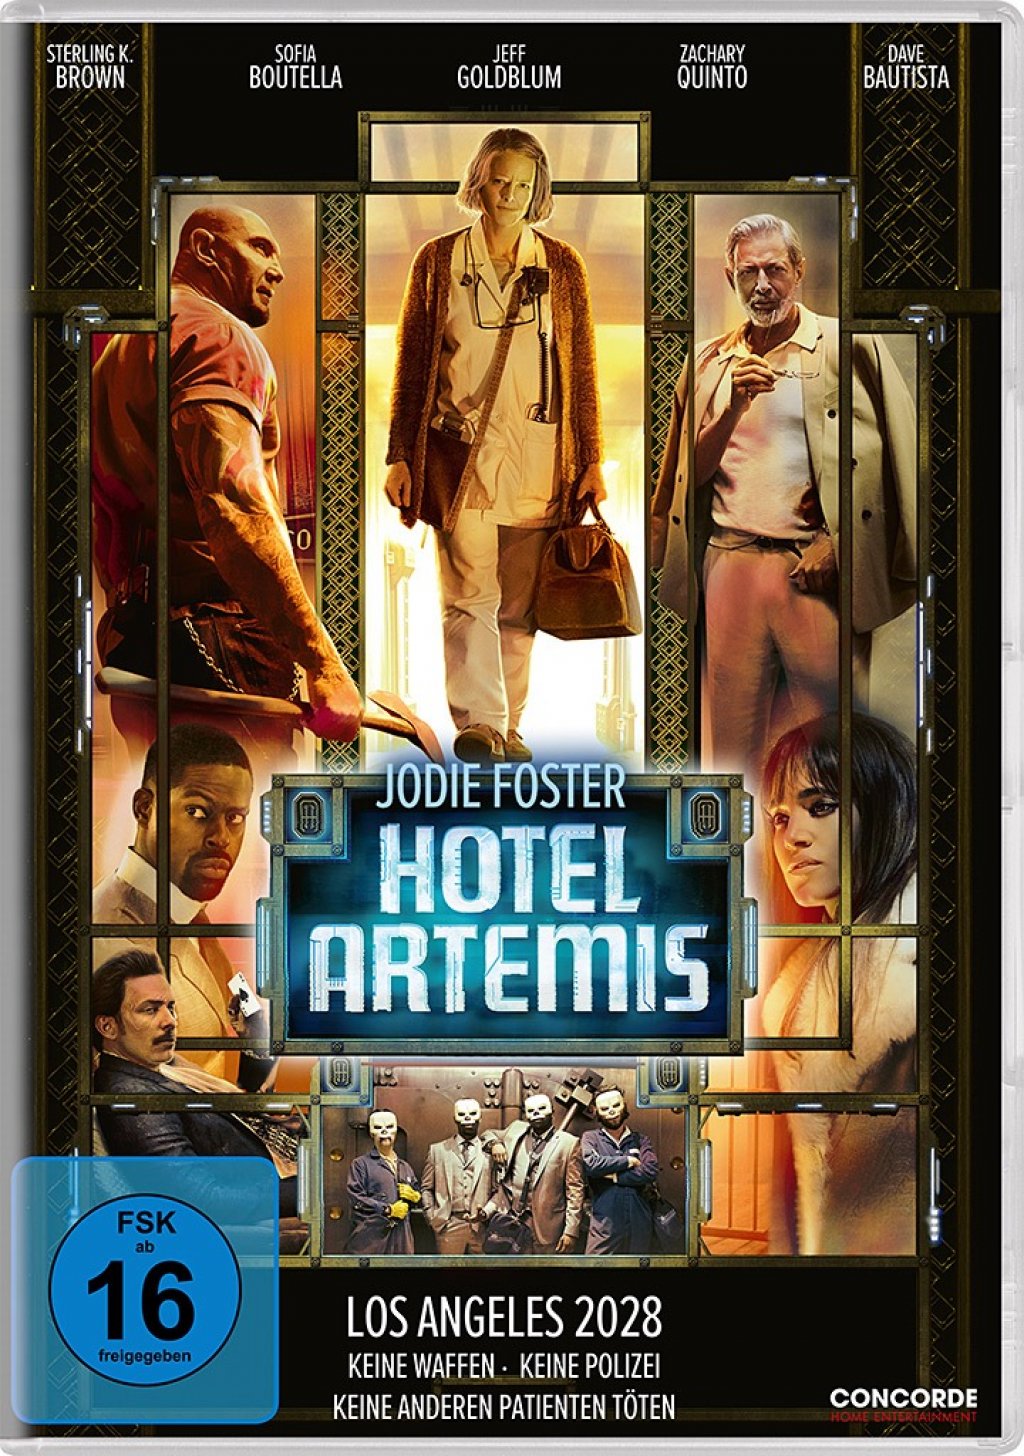 Gambar Box Set Hotel Artemis